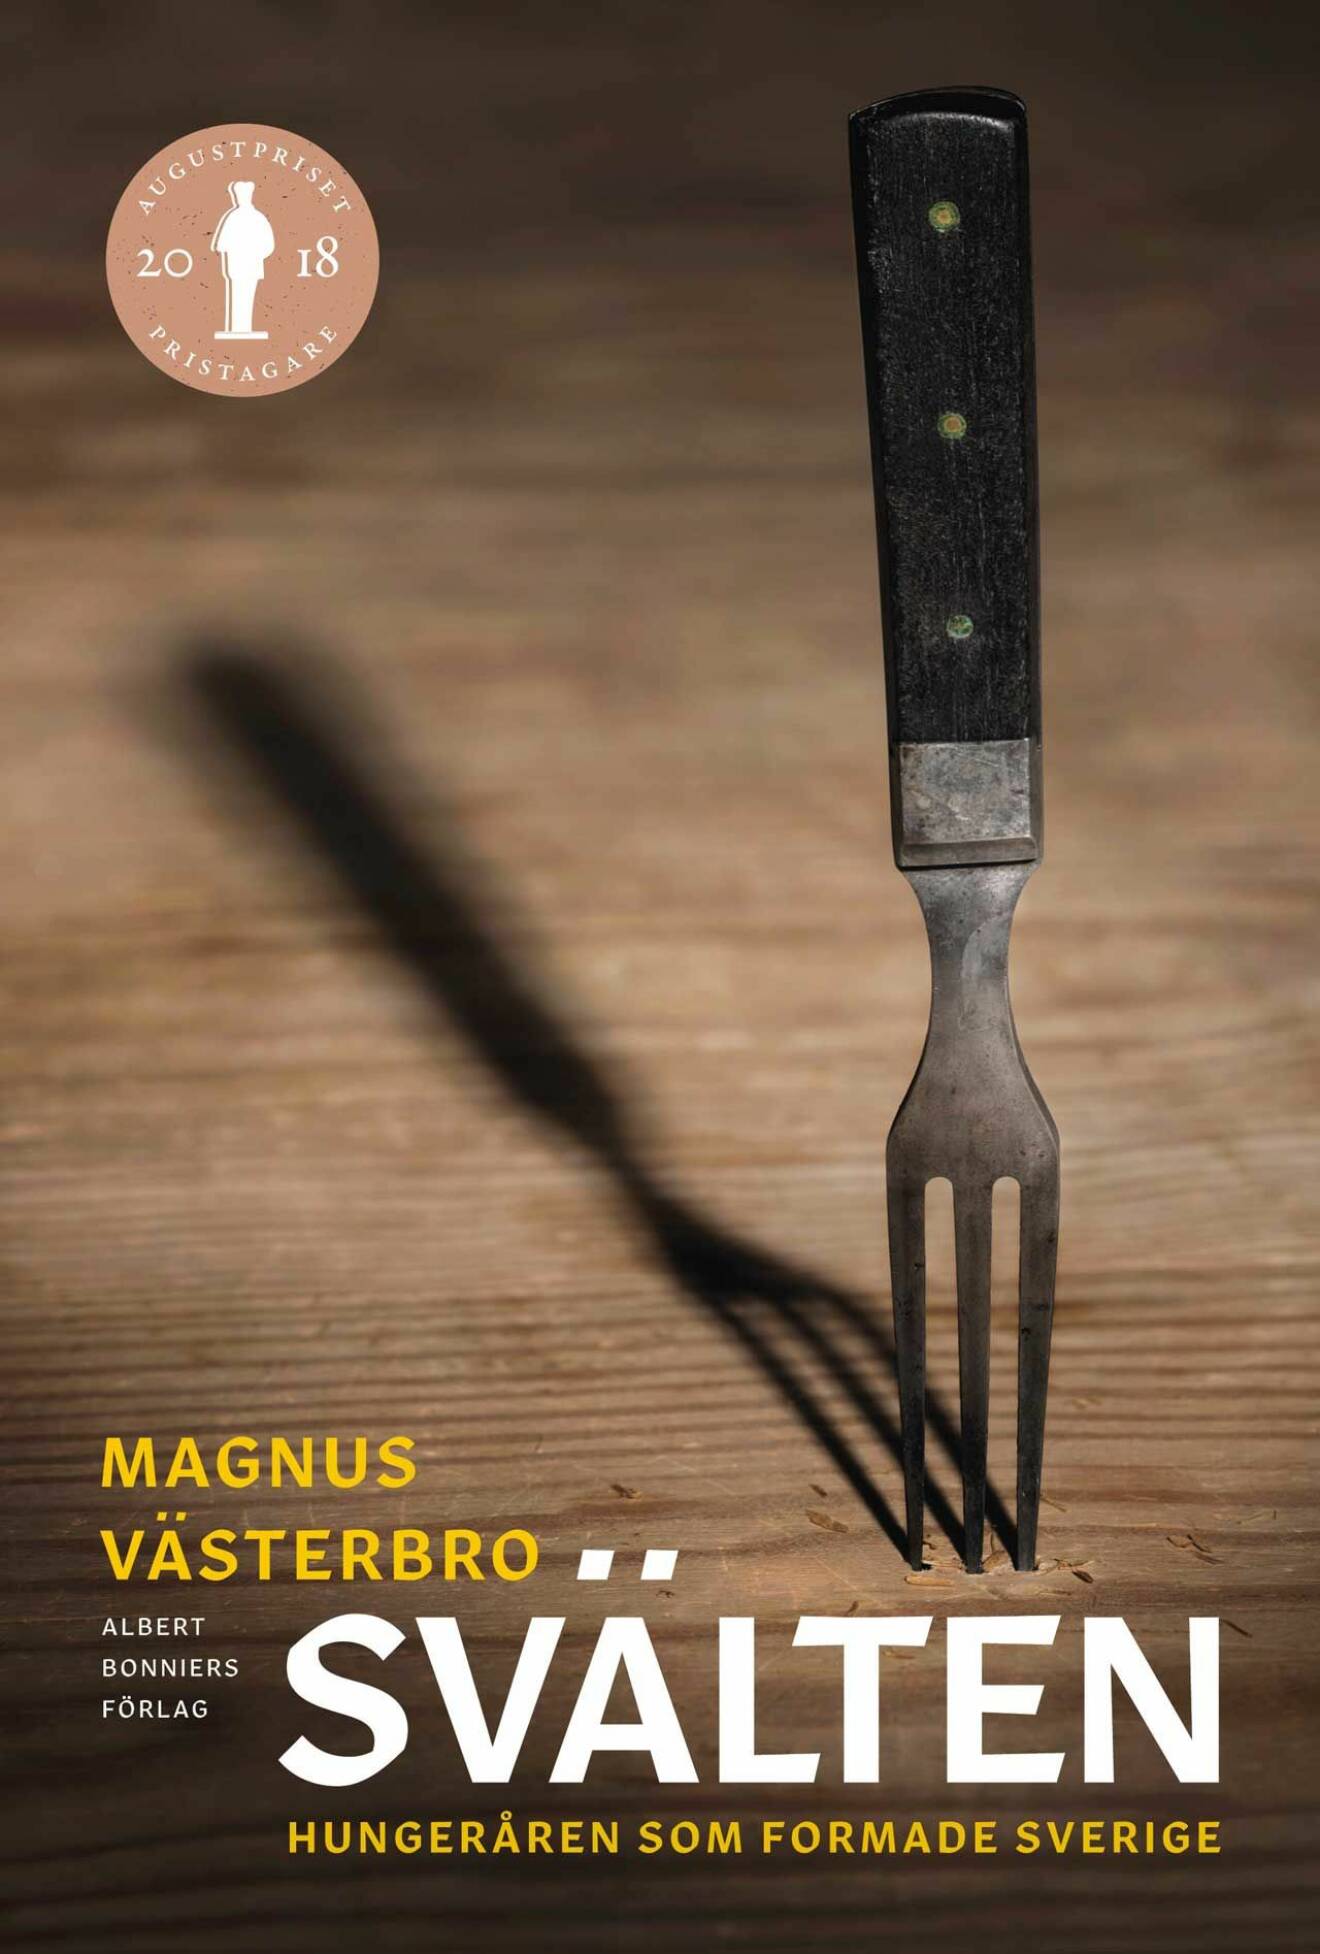 Magnus Västerbro vann Augustpriset för sin fjärde fackbok, ”Svälten – hungeråren som formade Sverige”, hans fjärde fackbok.